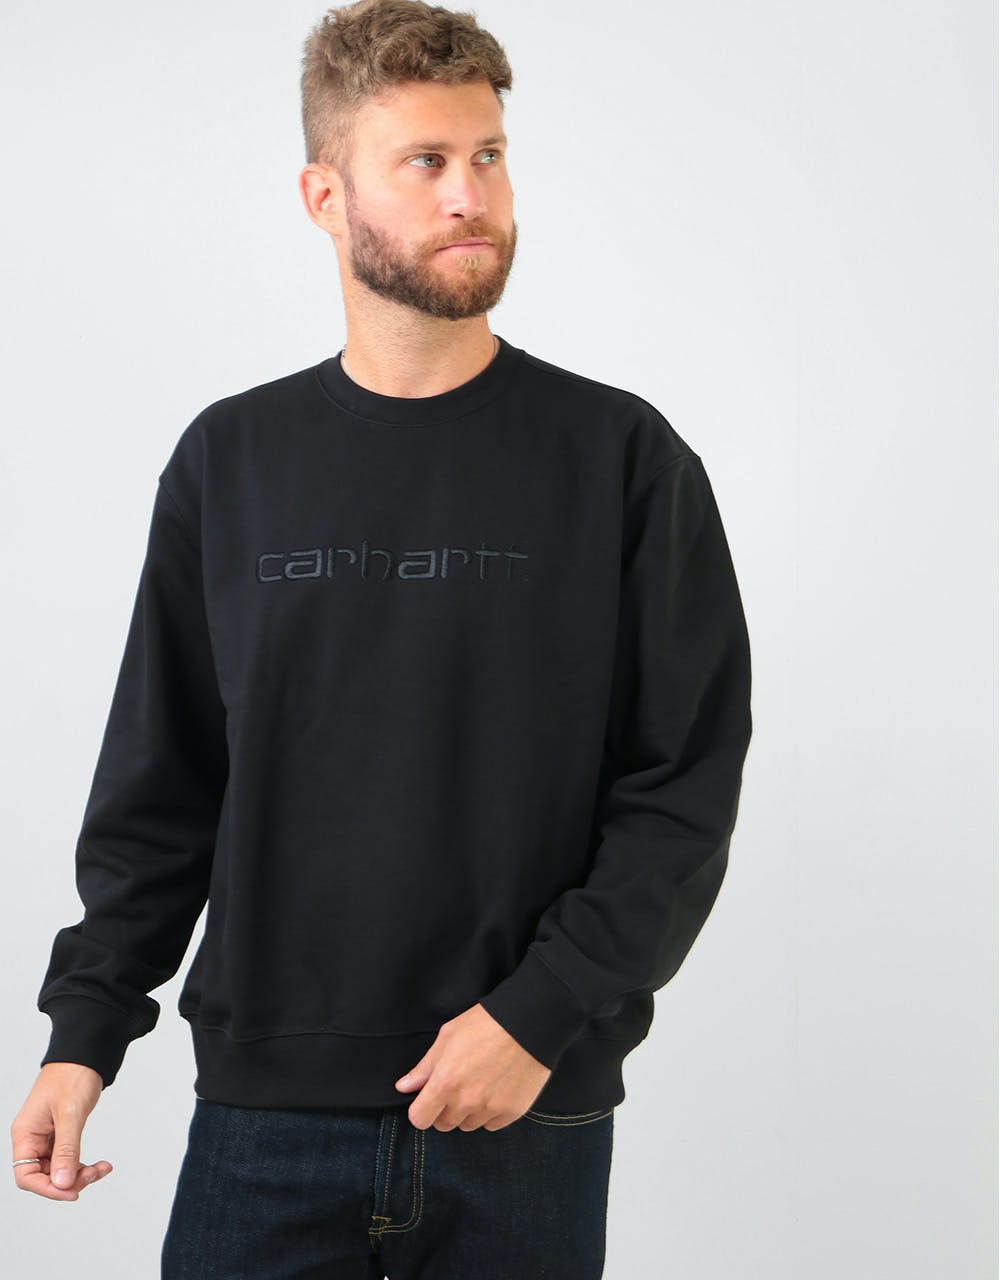 Carhartt WIP Sweatshirt - Black/Black